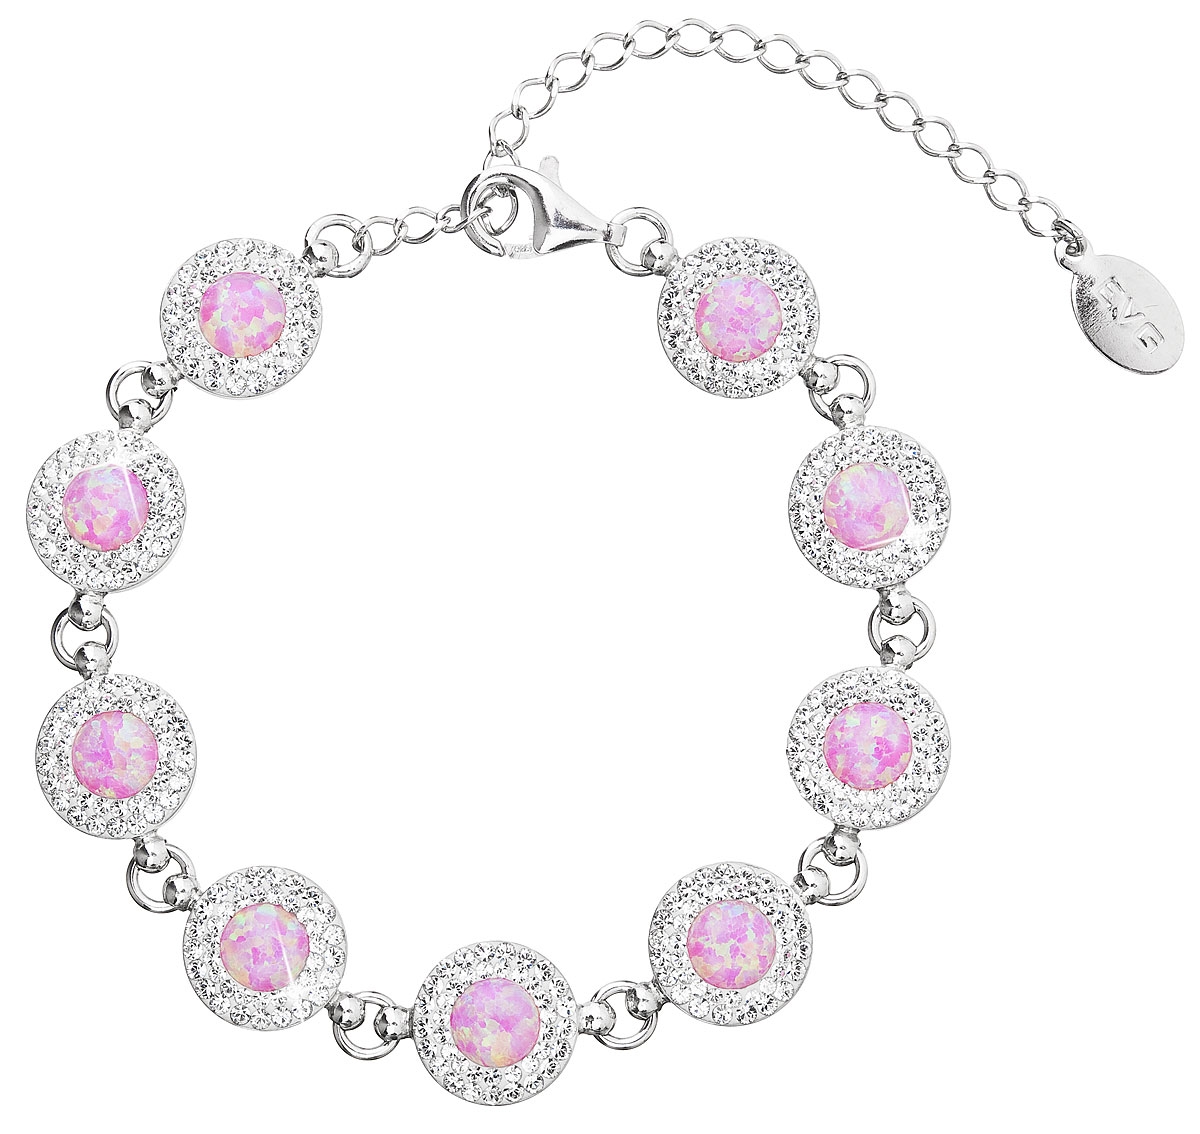 Strieborný náramok s kryštálmi Crystals from Swarovski ® a ružovými opálmi